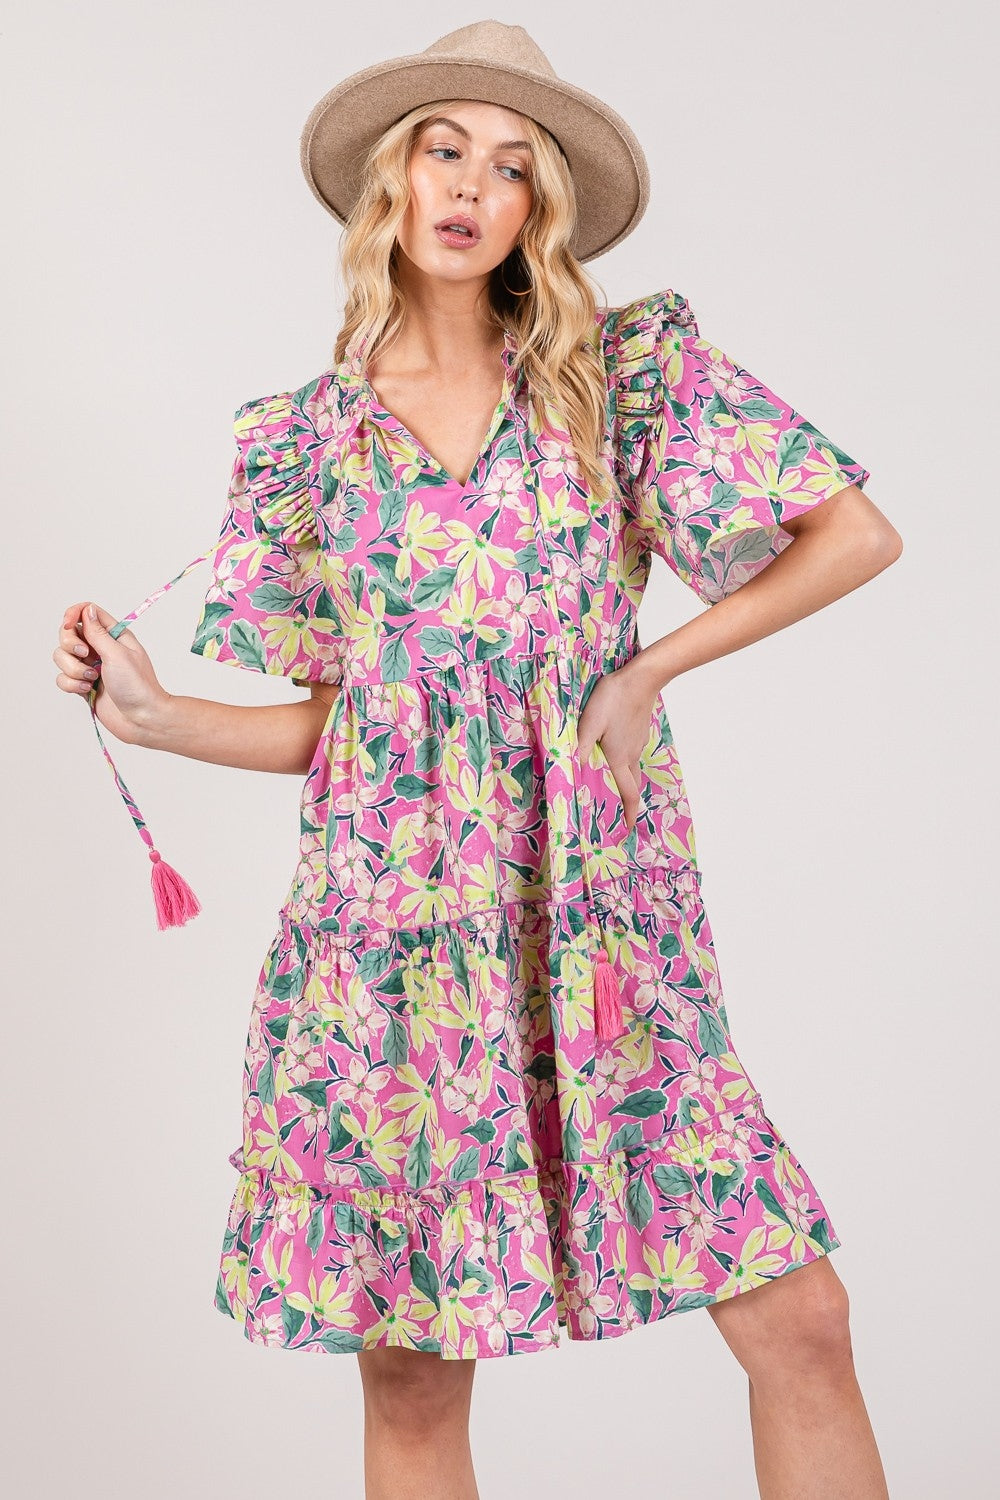 SAGE + FIG Pink Floral Ruffle Short Sleeve Dress Trendsi